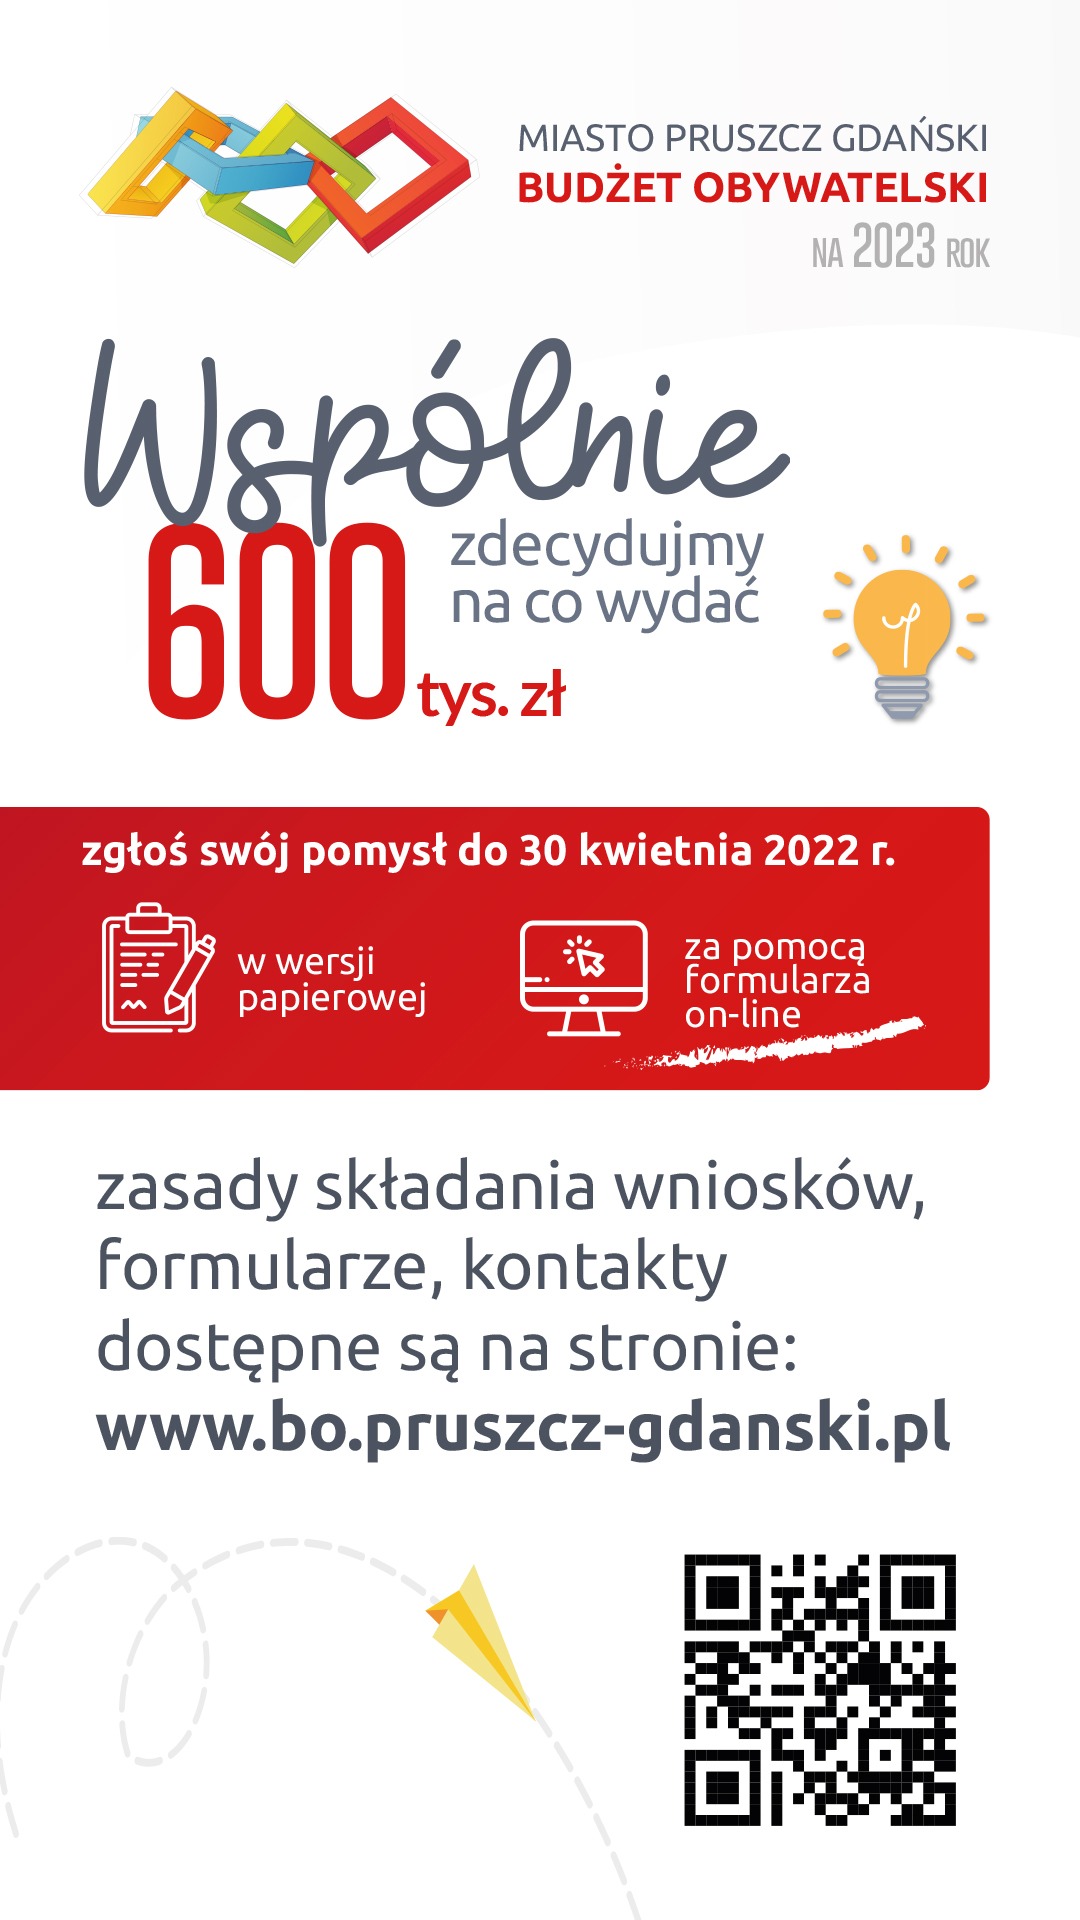 Budżet obywatelski - Miasto Pruszcz Gdański - Obrazek 1